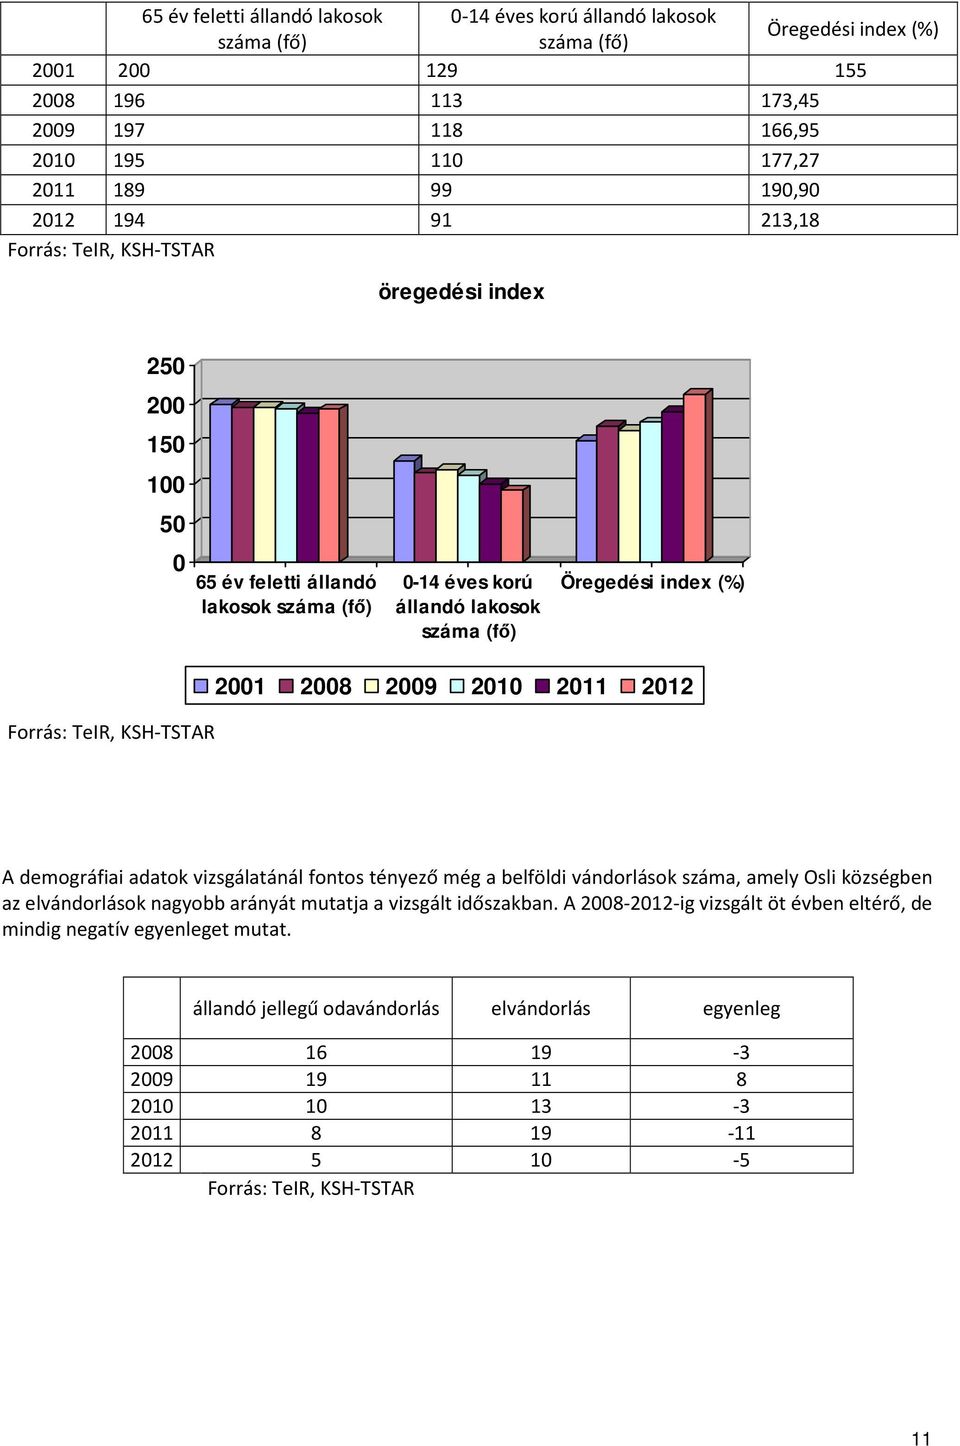 KSH-TSTAR 2001 2008 2009 2010 2011 2012 A demográfiai adatok vizsgálatánál fontos tényező még a belföldi vándorlások száma, amely Osli községben az elvándorlások nagyobb arányát mutatja a vizsgált